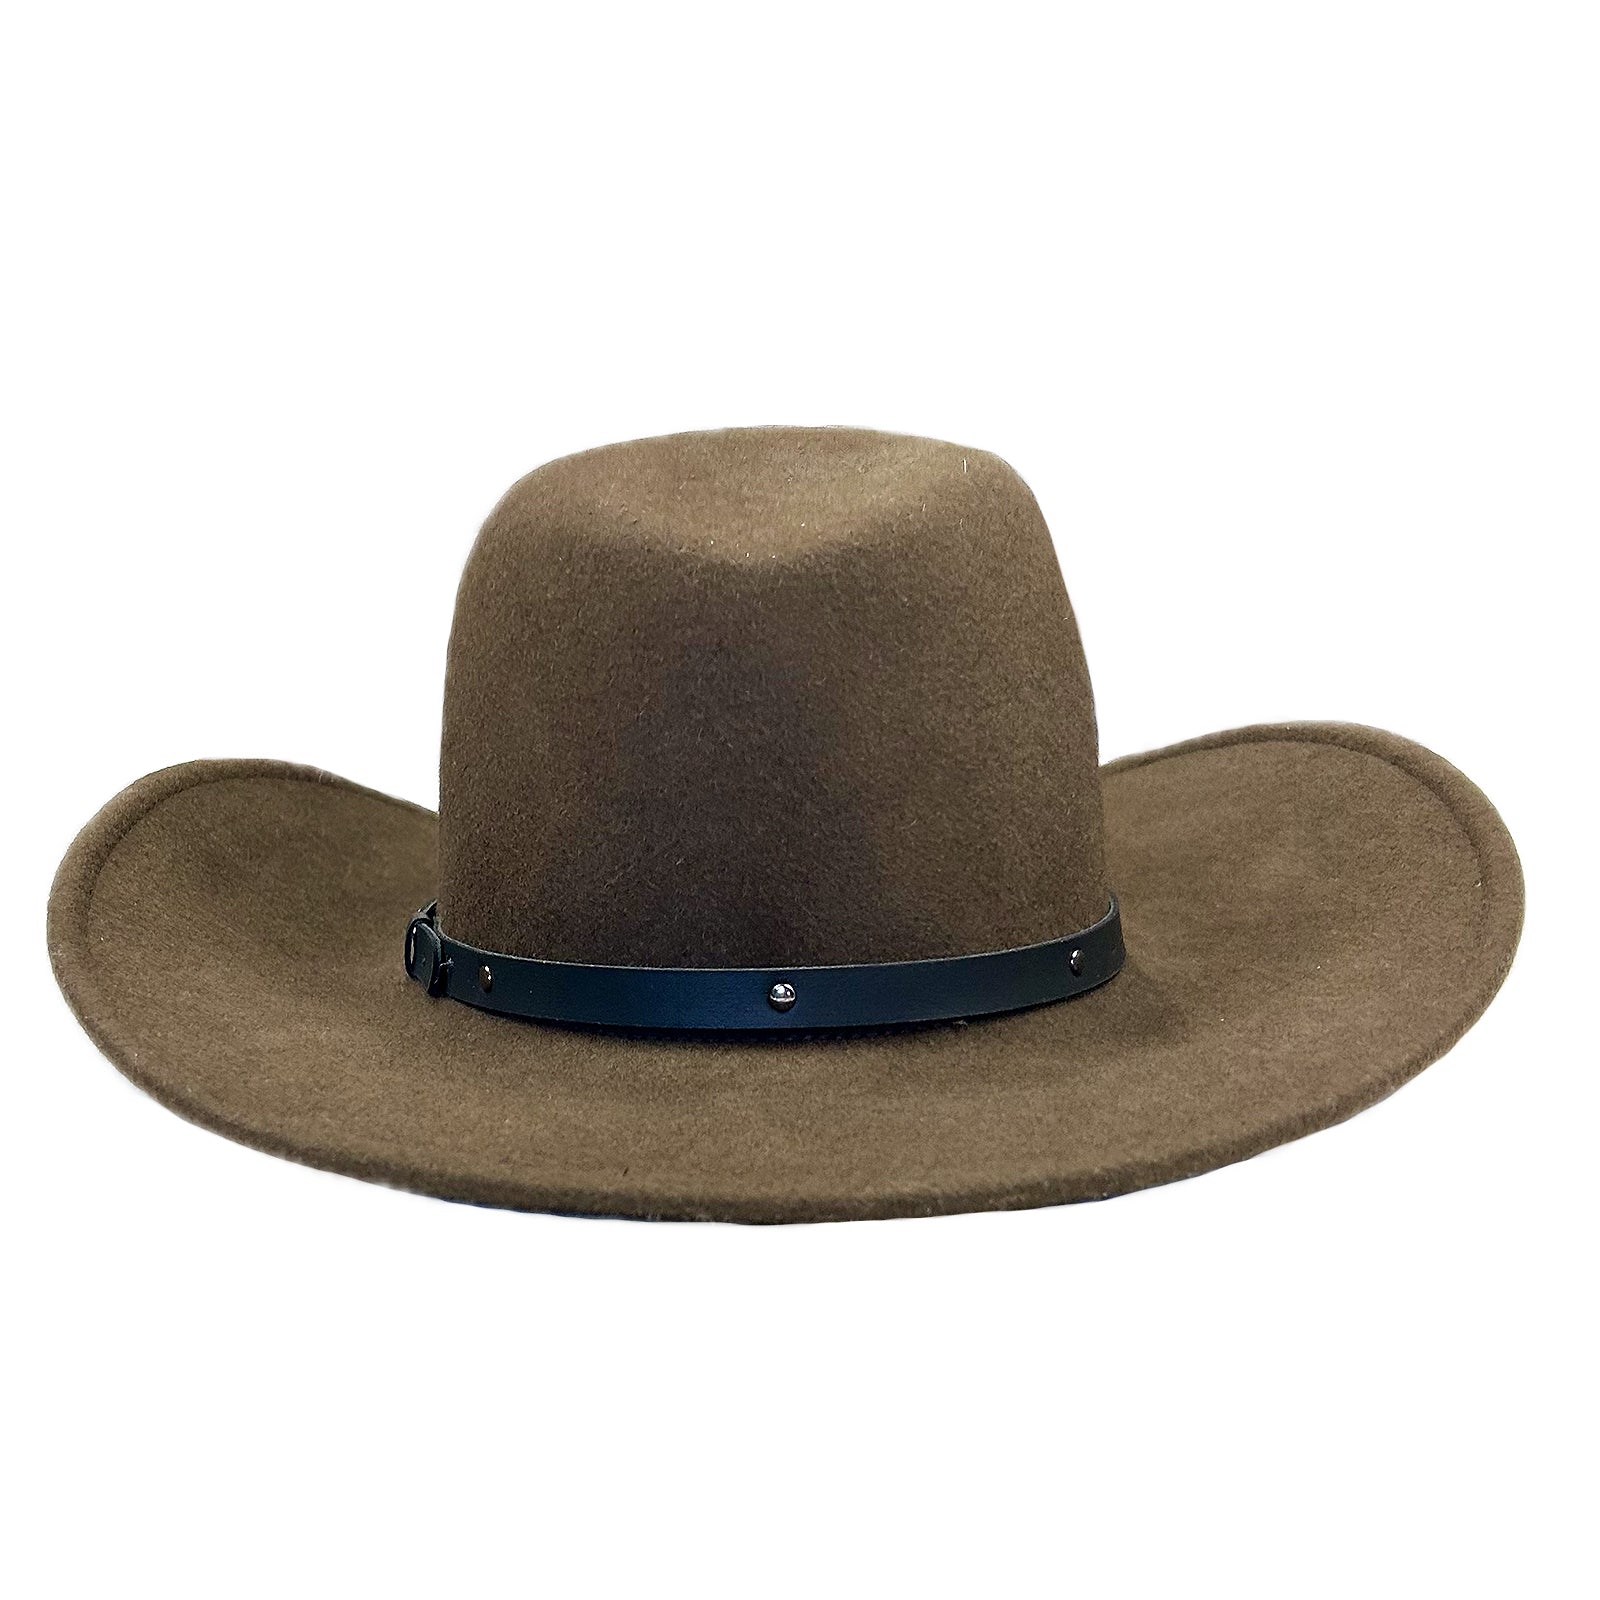 Rockmount Crushable Brown Felt Magic Pinch Western Cowboy Hat